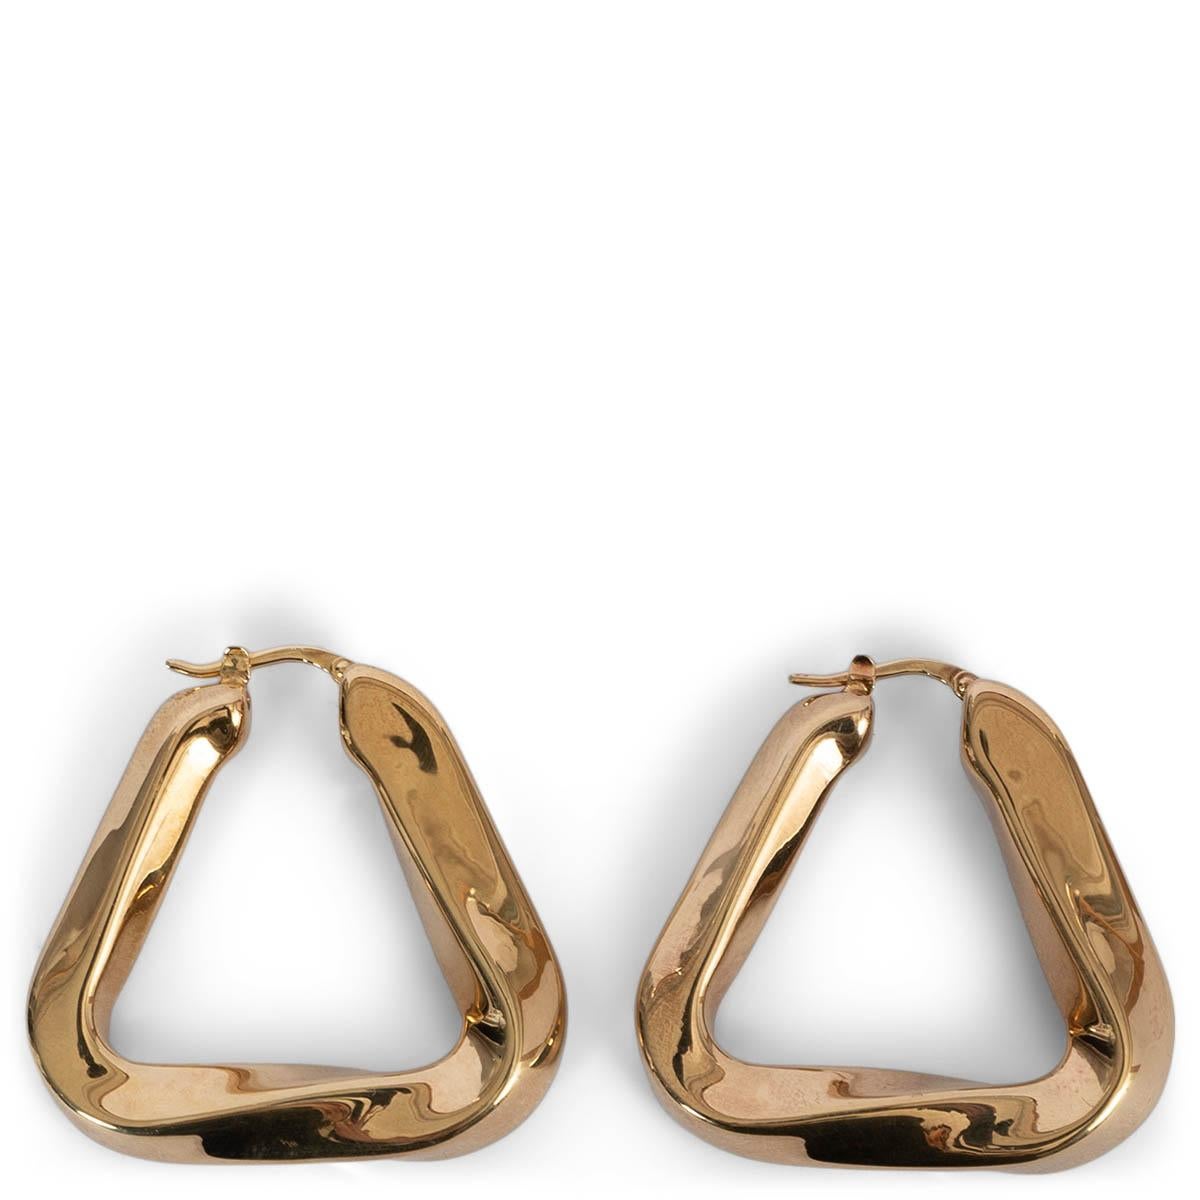 100% authentische Bottega Veneta Essentials Twisted Triangle Ohrringe aus vergoldetem Sterlingsilber. Postfasten für gepiercte Ohren. Sie wurden getragen und sind in ausgezeichnetem Zustand. Kommt mit Staubbeutel. 

Messungen
Breite	3.5cm